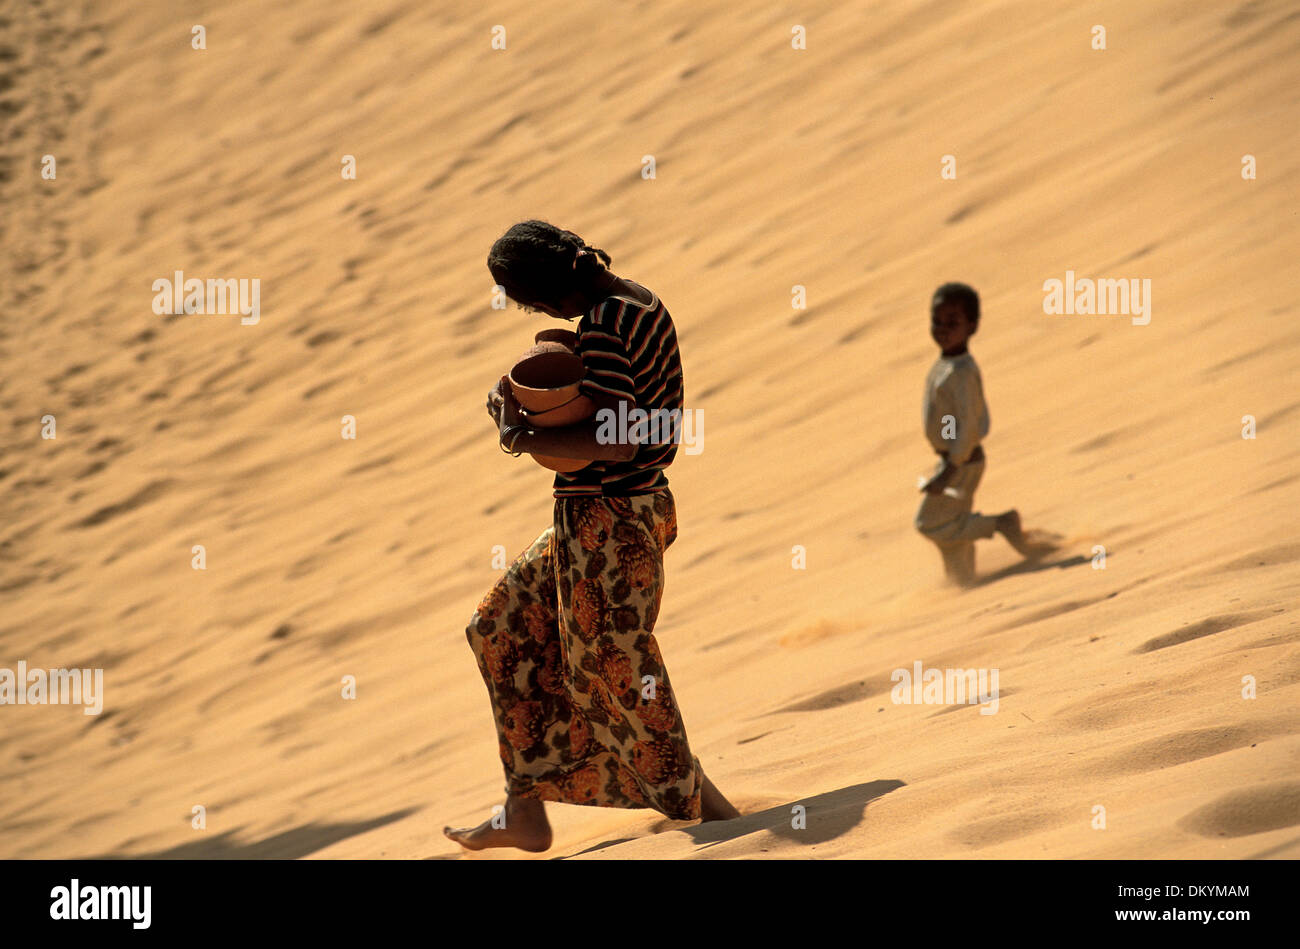 Tuareg population of Timimoun in Algeria. Stock Photo